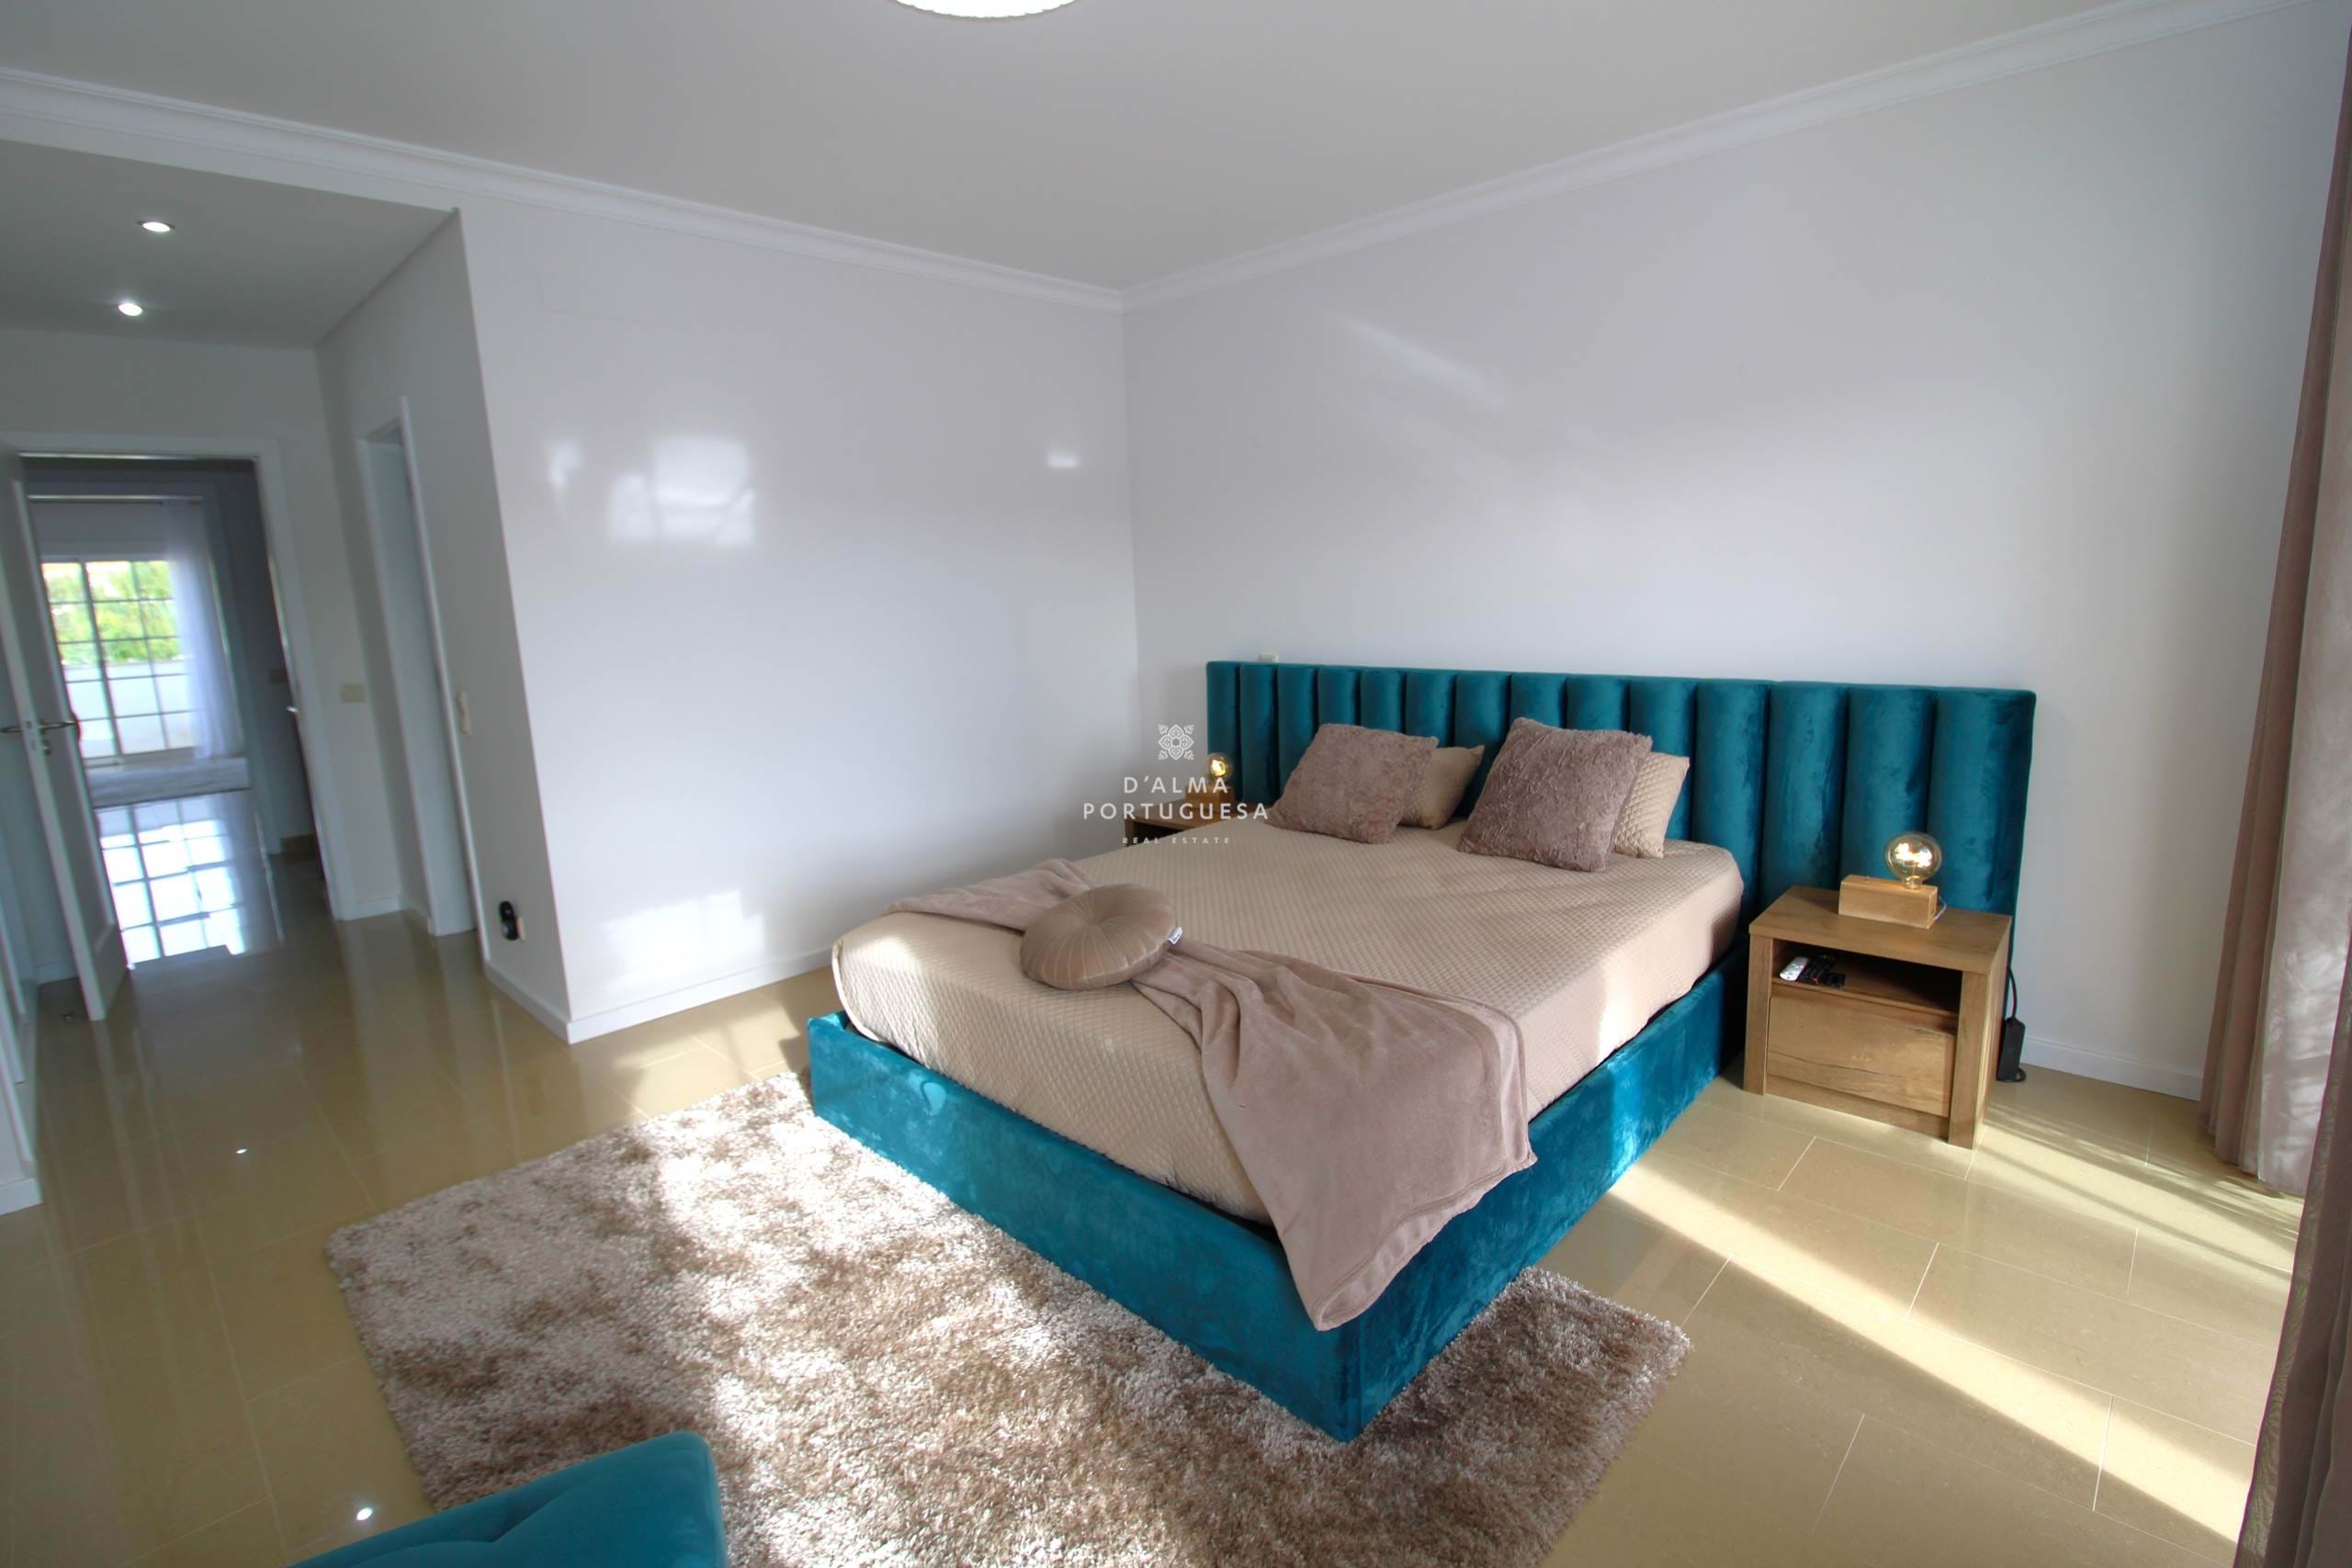 Villa de 3 dormitorios,villa en condominio,villa con piscina,villa con estacionamiento,villa en Shona Calma